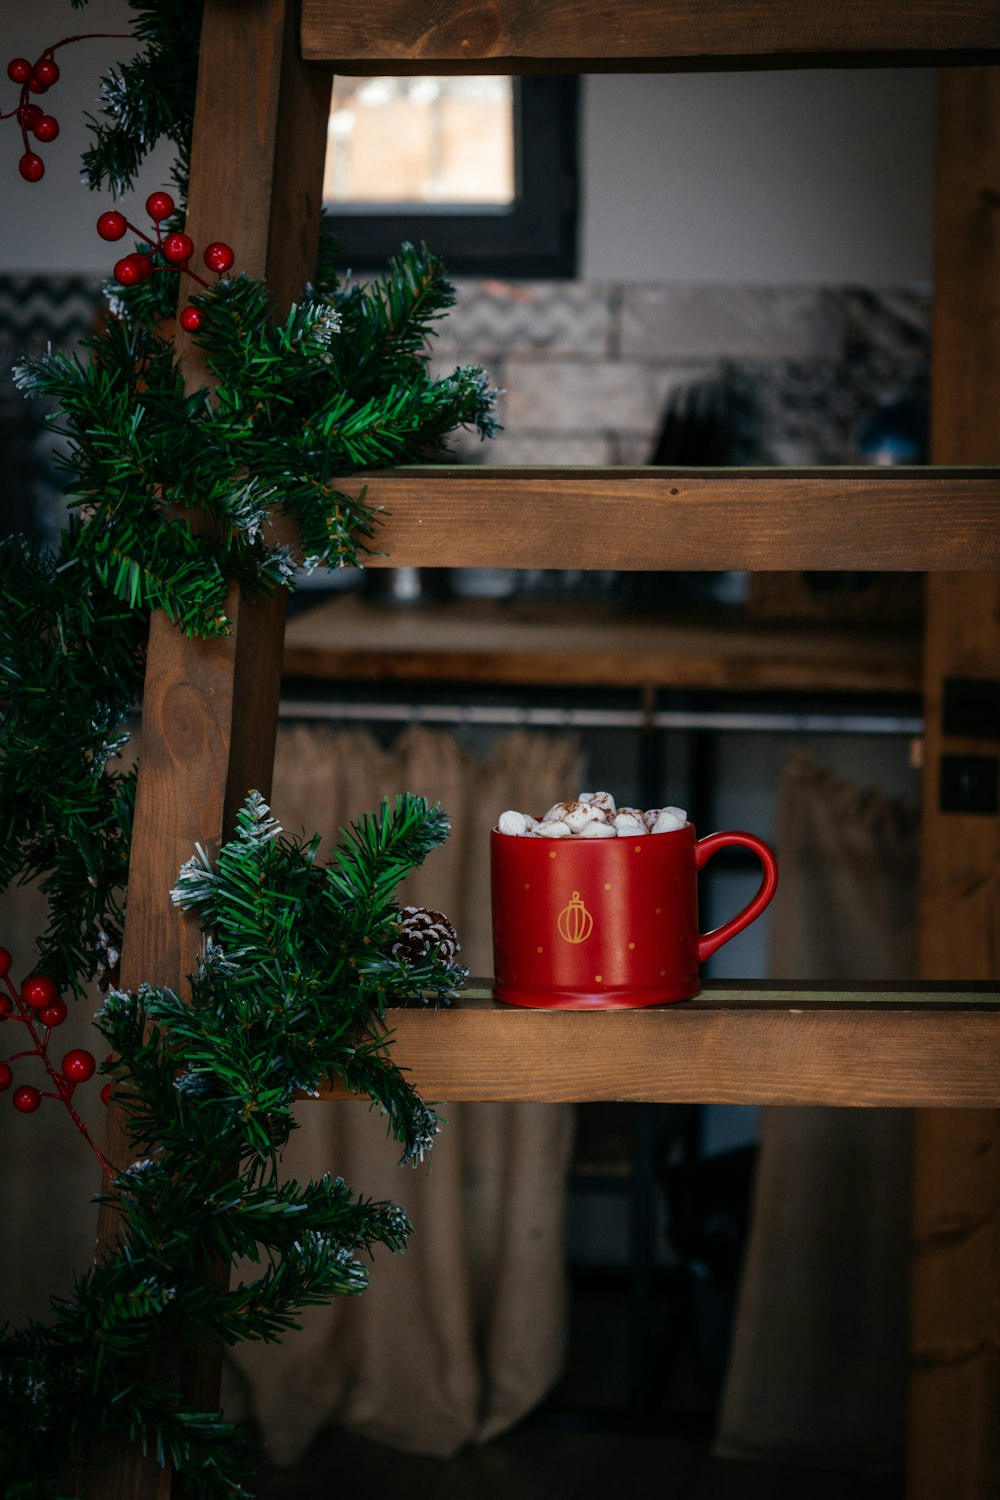 Una taza roja de café encima de un estante de madera